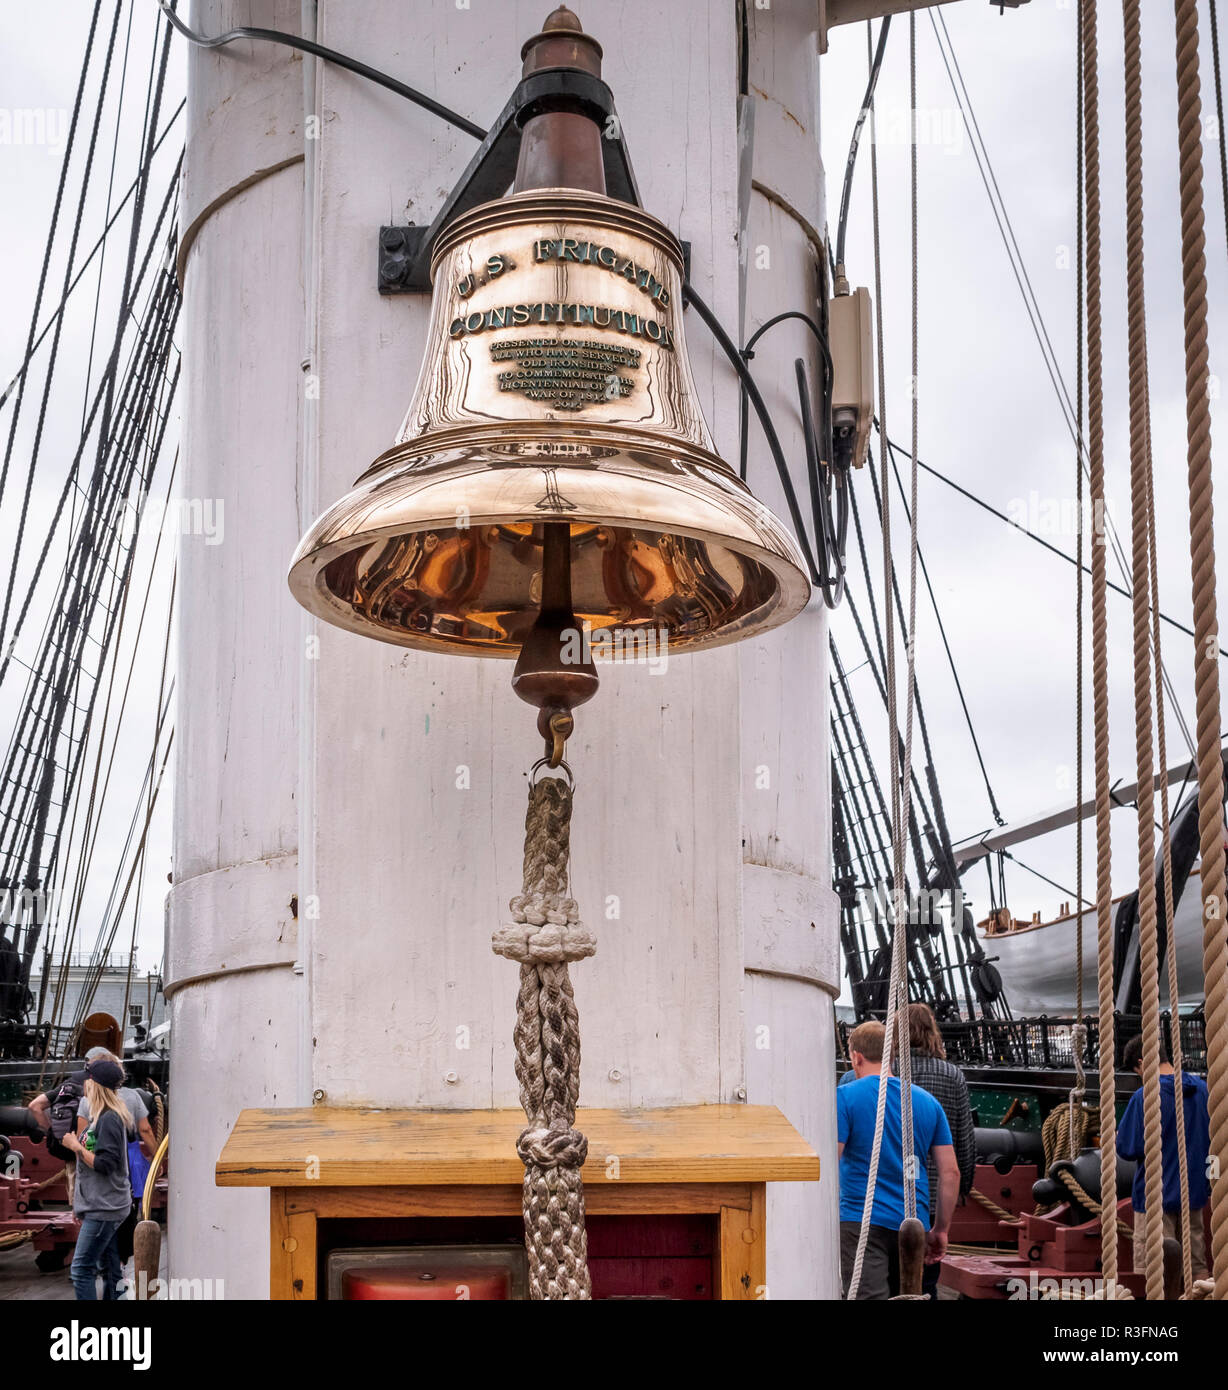 Une cloche de navire de guerre la plus ancienne du monde encore à flot,  c.-à-d Consituttion - USS Constitution frégate américaine à Boston,  États-Unis Photo Stock - Alamy